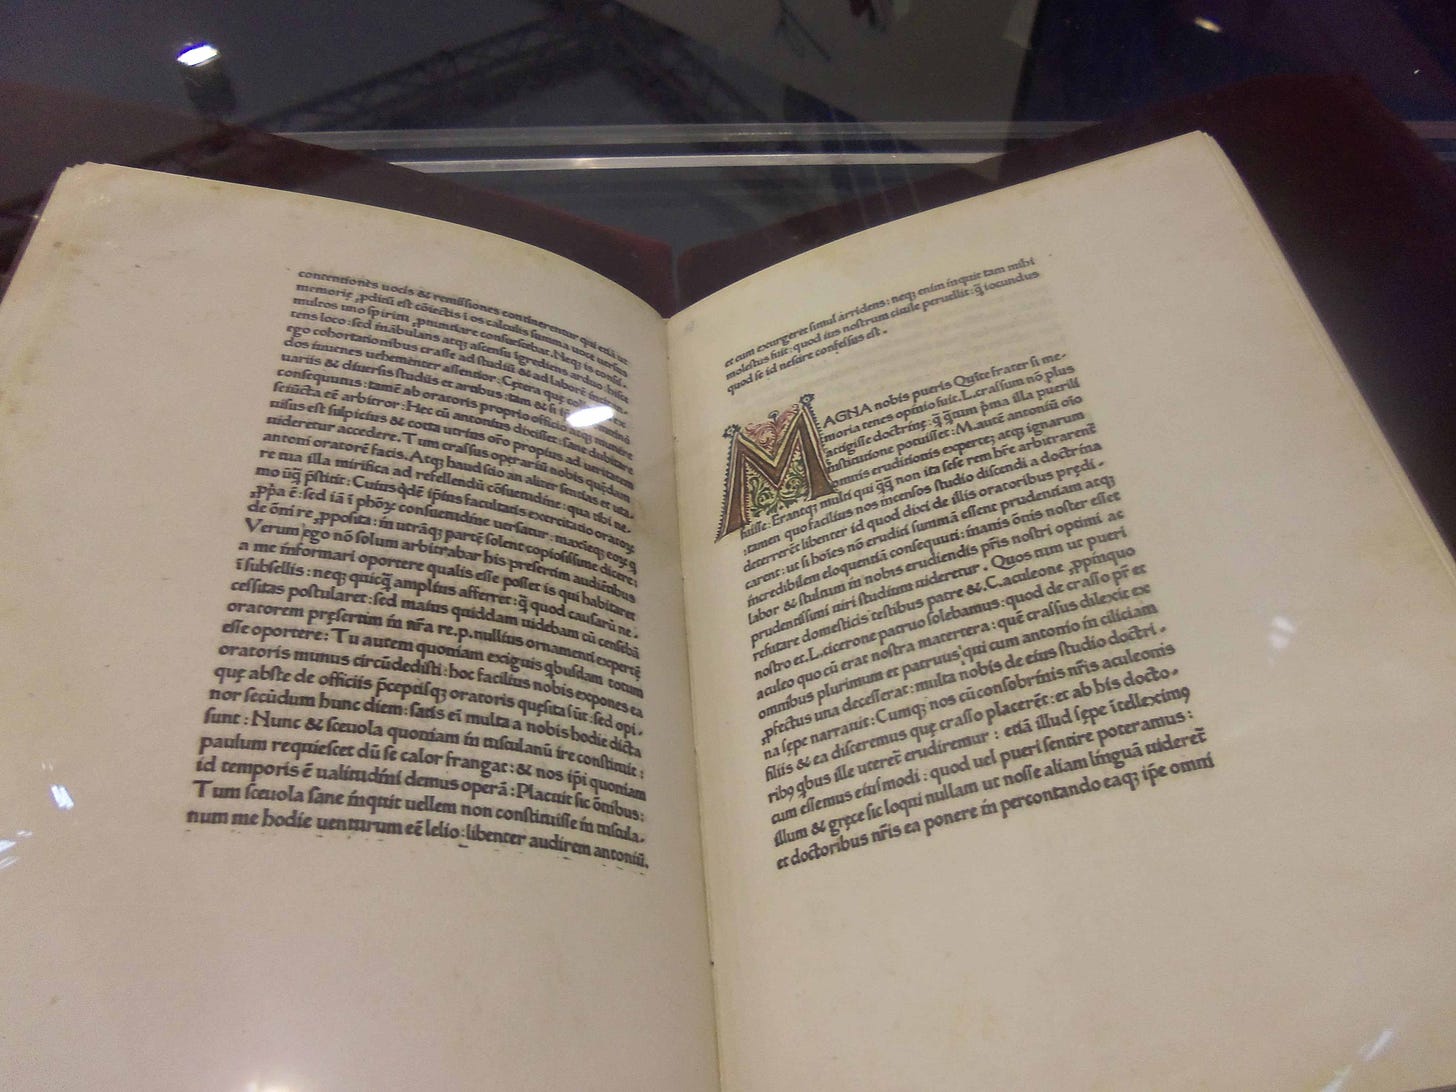 Cópia preservada do De Oratore de Pannartz e Sweynheym, de 1465, exposto no Salão do Livro de Torino em 2015.